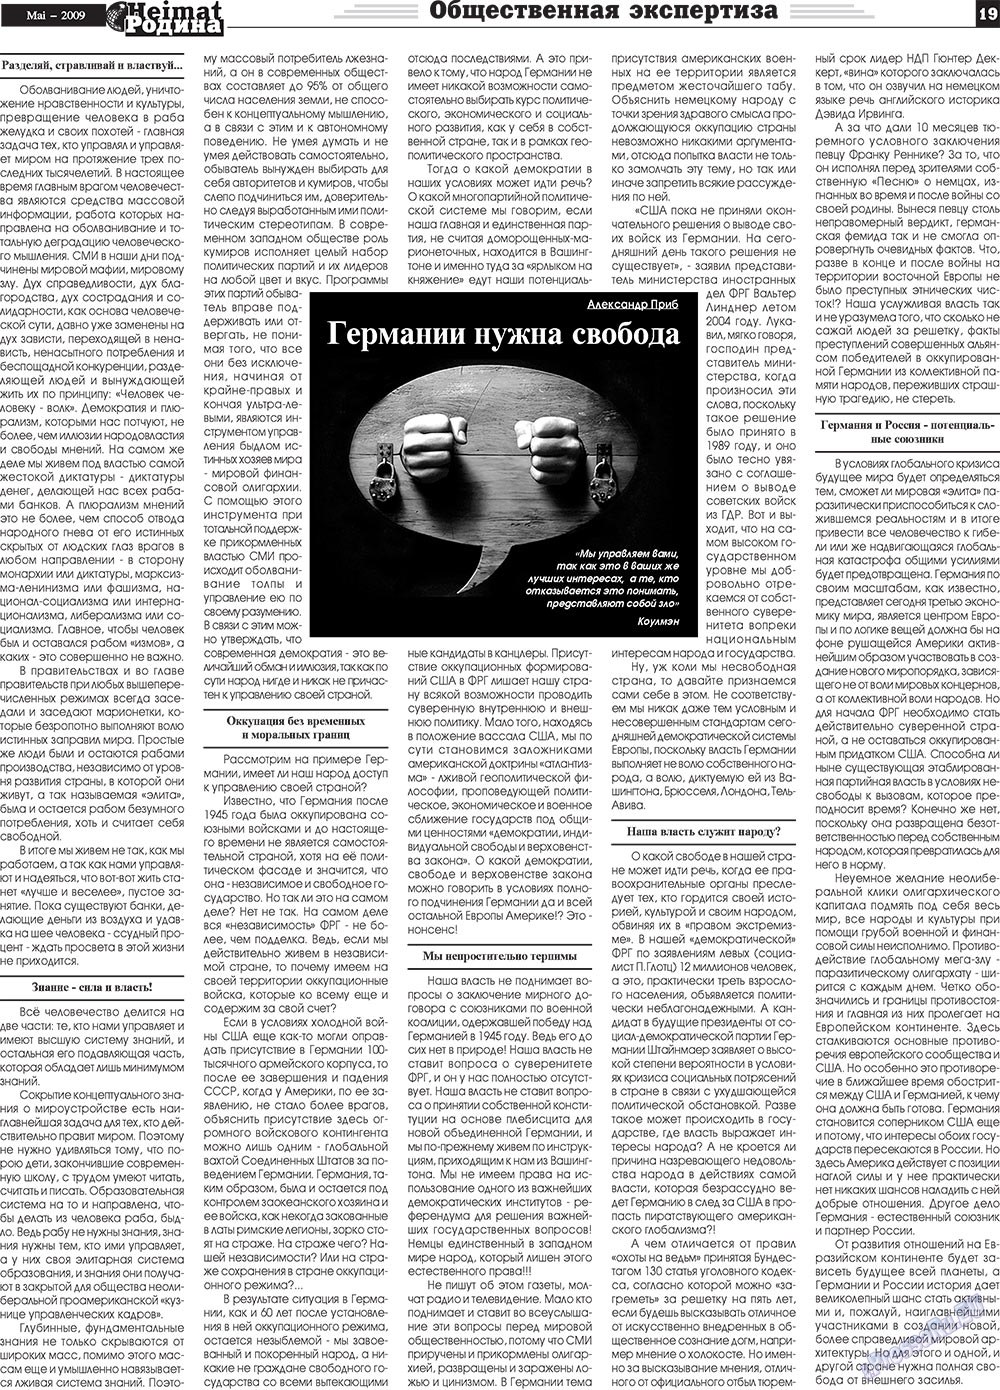 Heimat-Родина (газета). 2009 год, номер 5, стр. 19